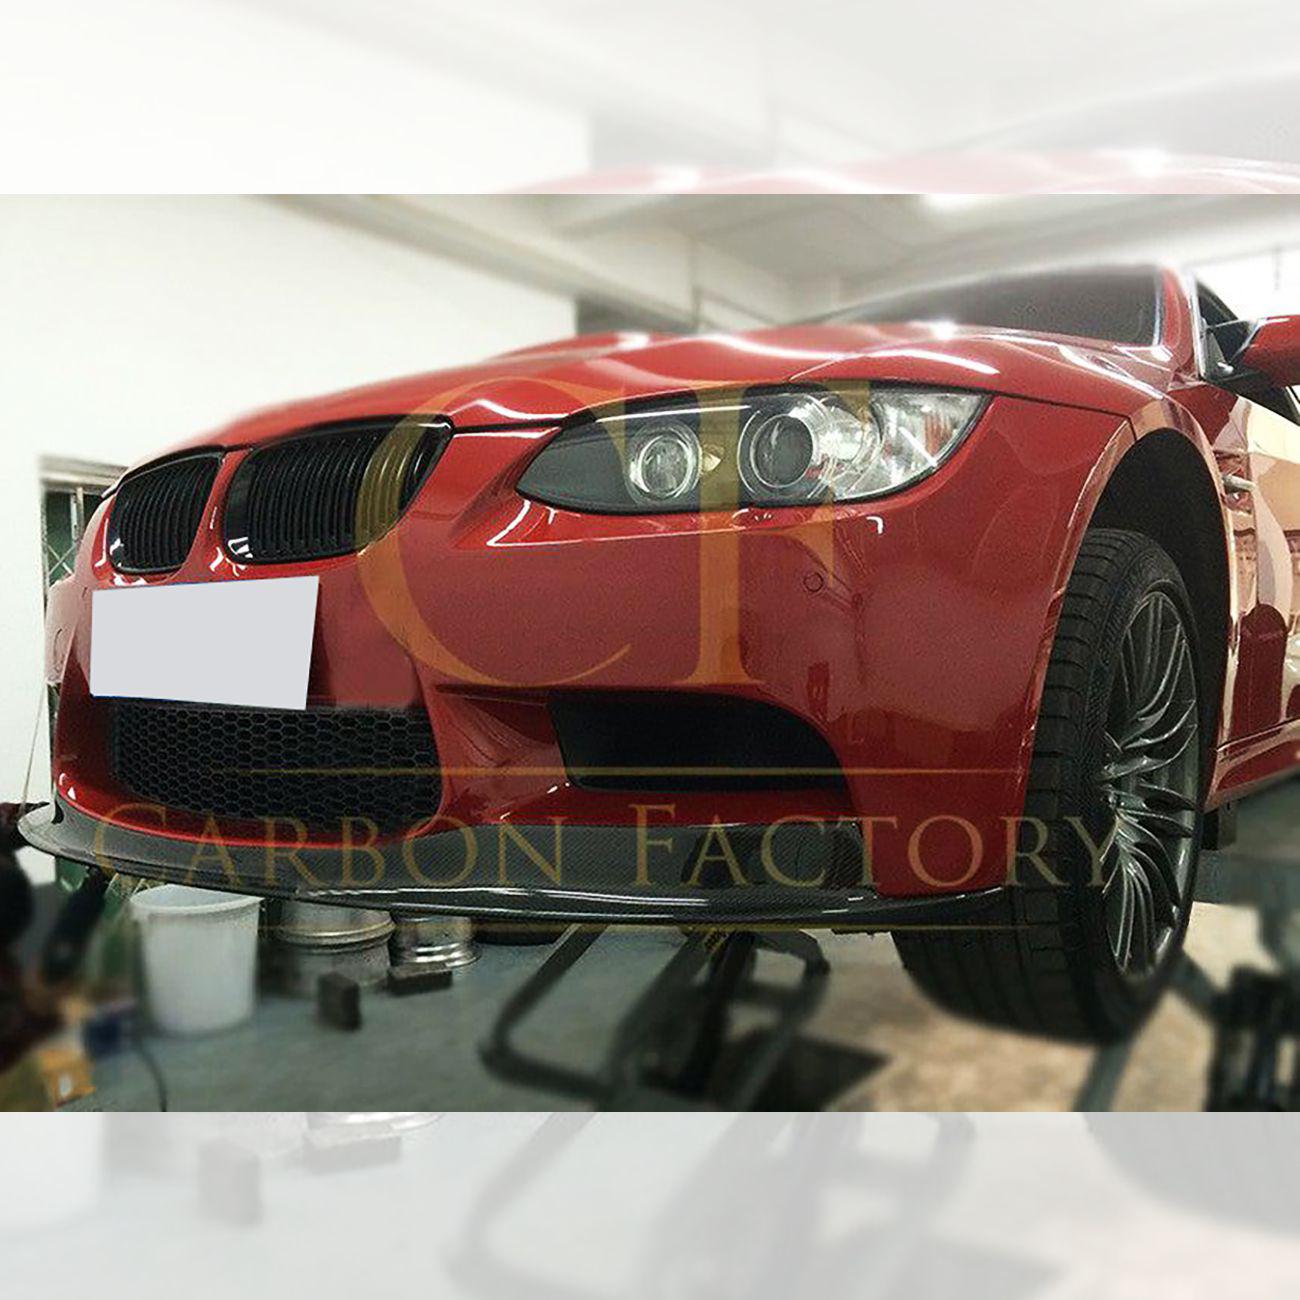 BMW E90 E92 E93 M3 AKR Style Carbon Fibre Front Splitter 07-13-Carbon Factory